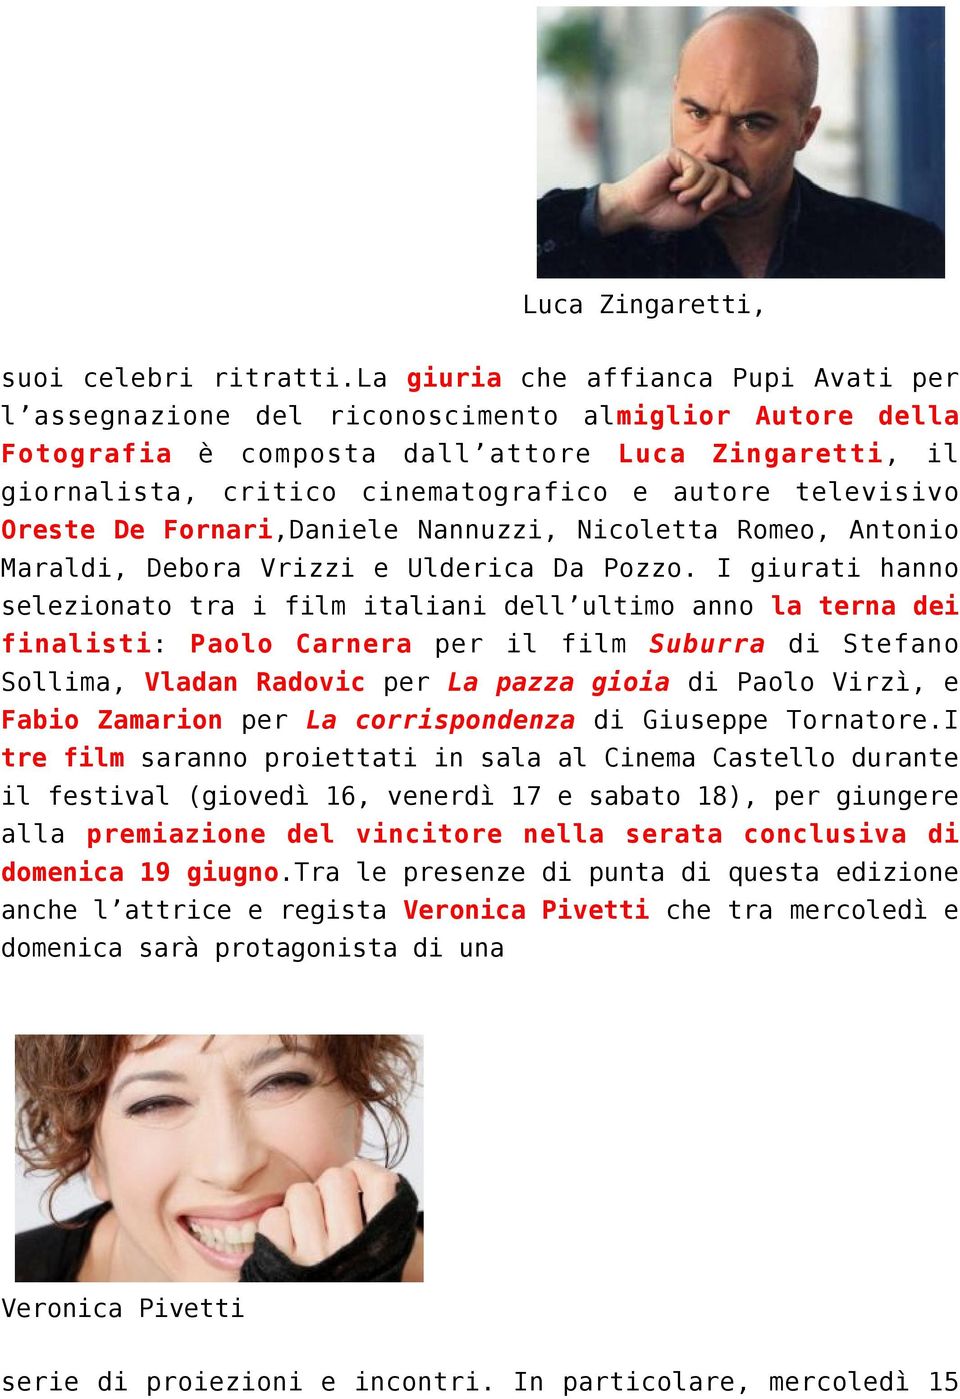 televisivo Oreste De Fornari,Daniele Nannuzzi, Nicoletta Romeo, Antonio Maraldi, Debora Vrizzi e Ulderica Da Pozzo.